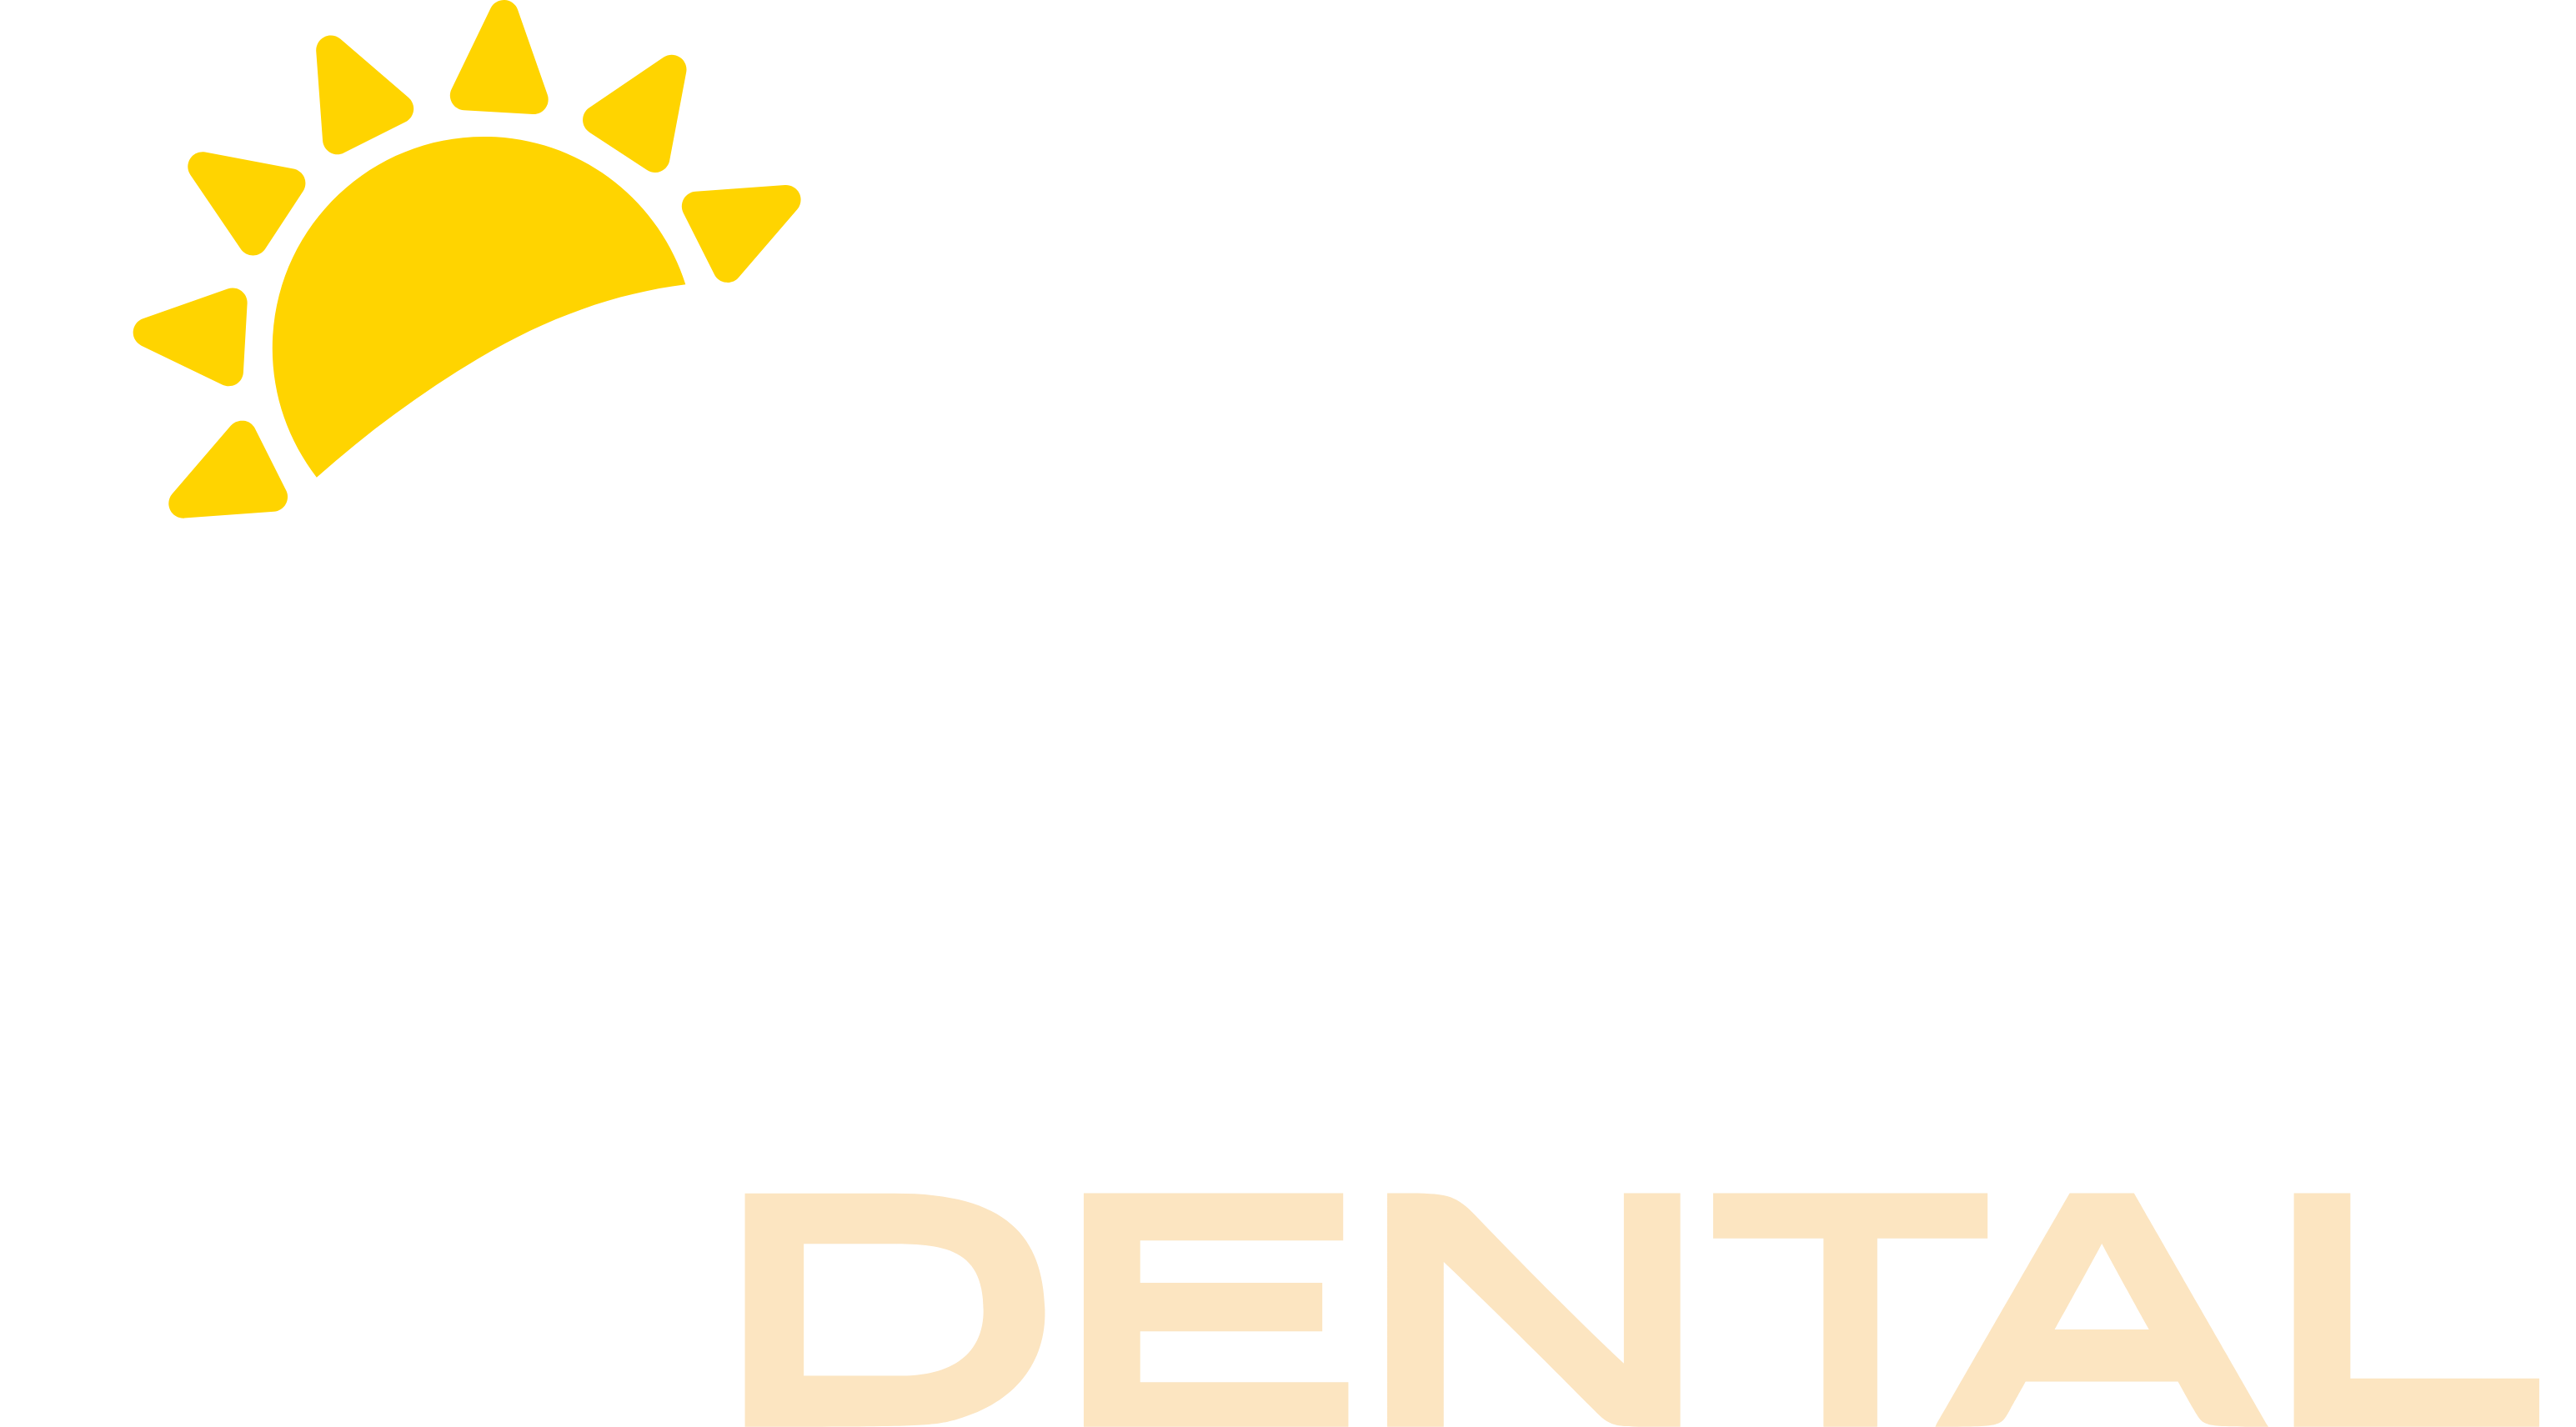 Cibolo Dental Logo